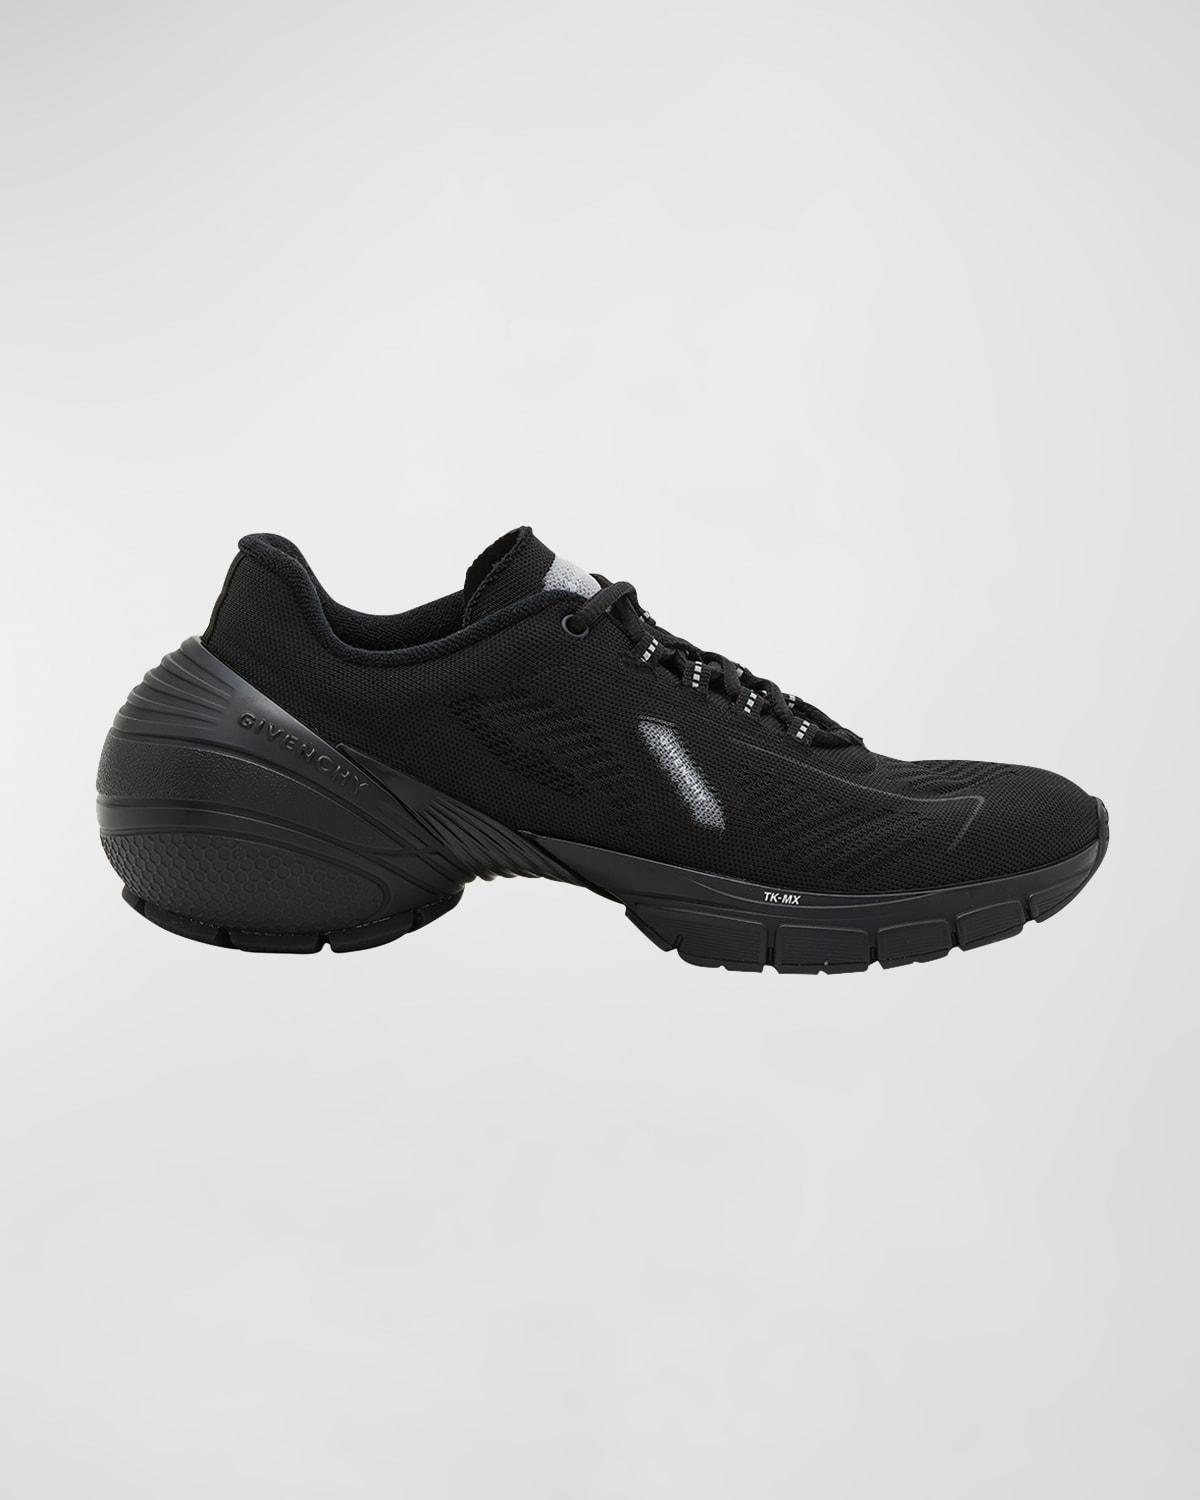 Givenchy Men's Tk-mx Light Runner Sneakers In Black